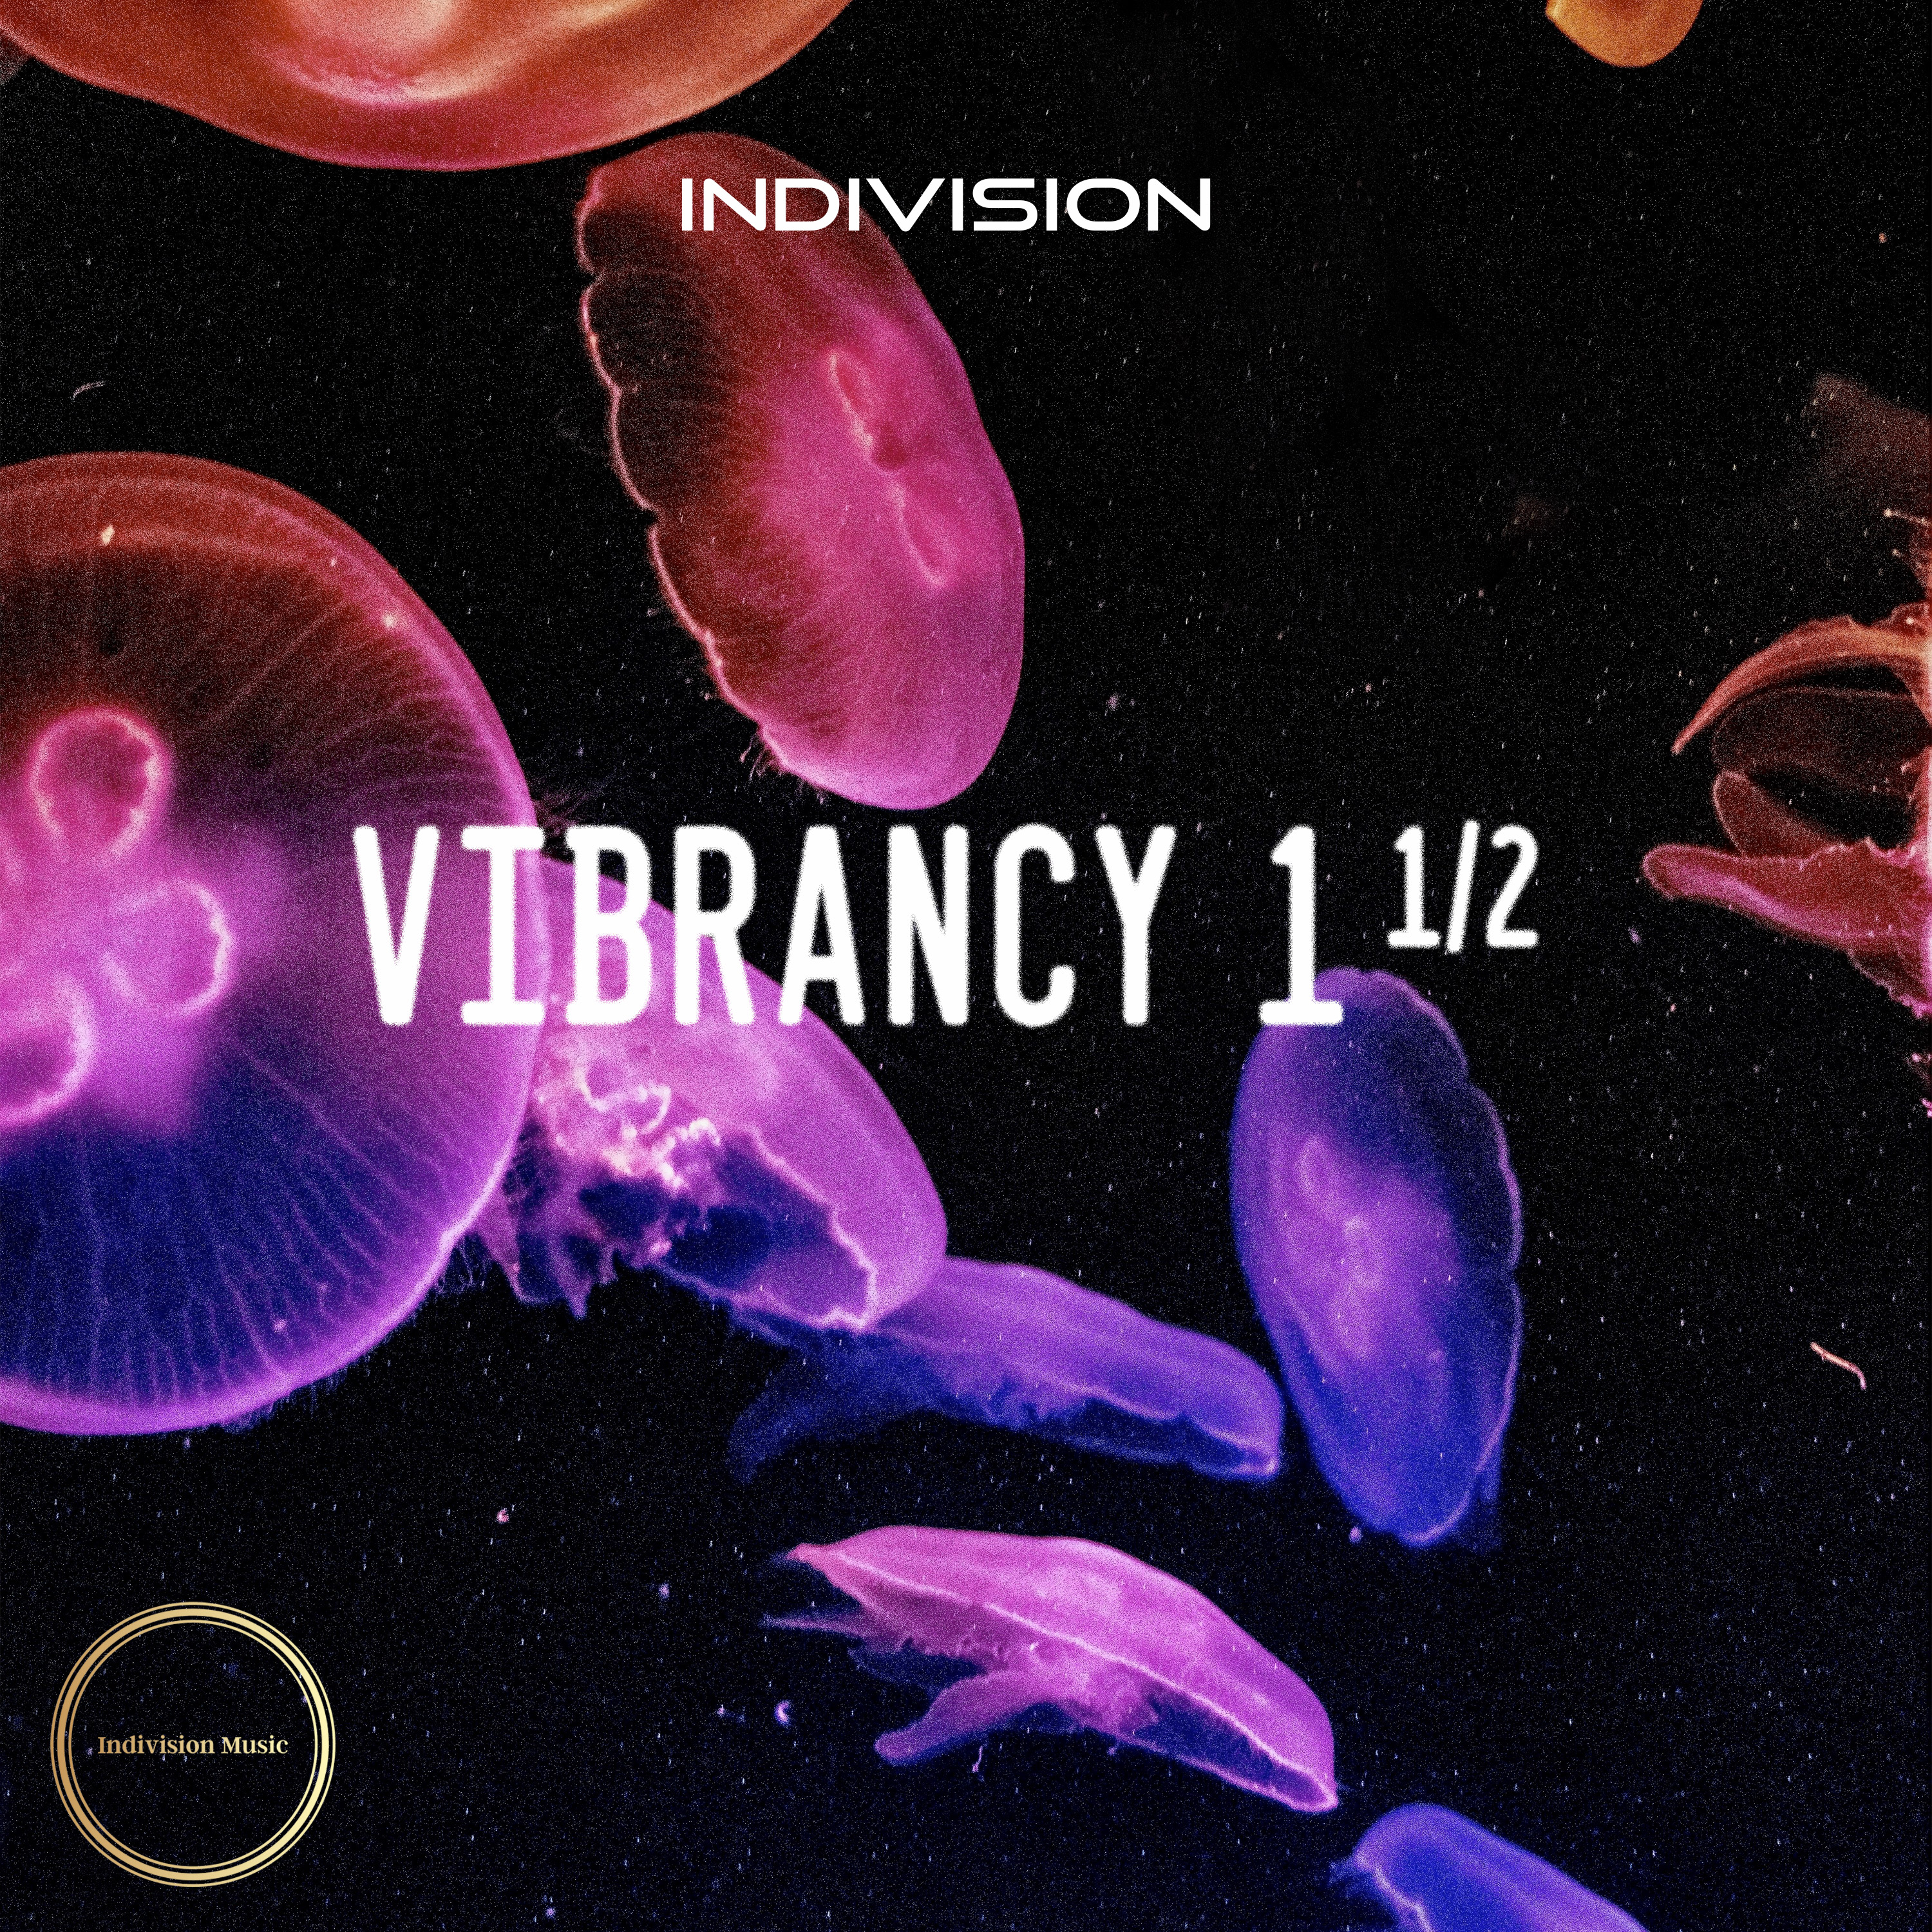 Vibrancy 1